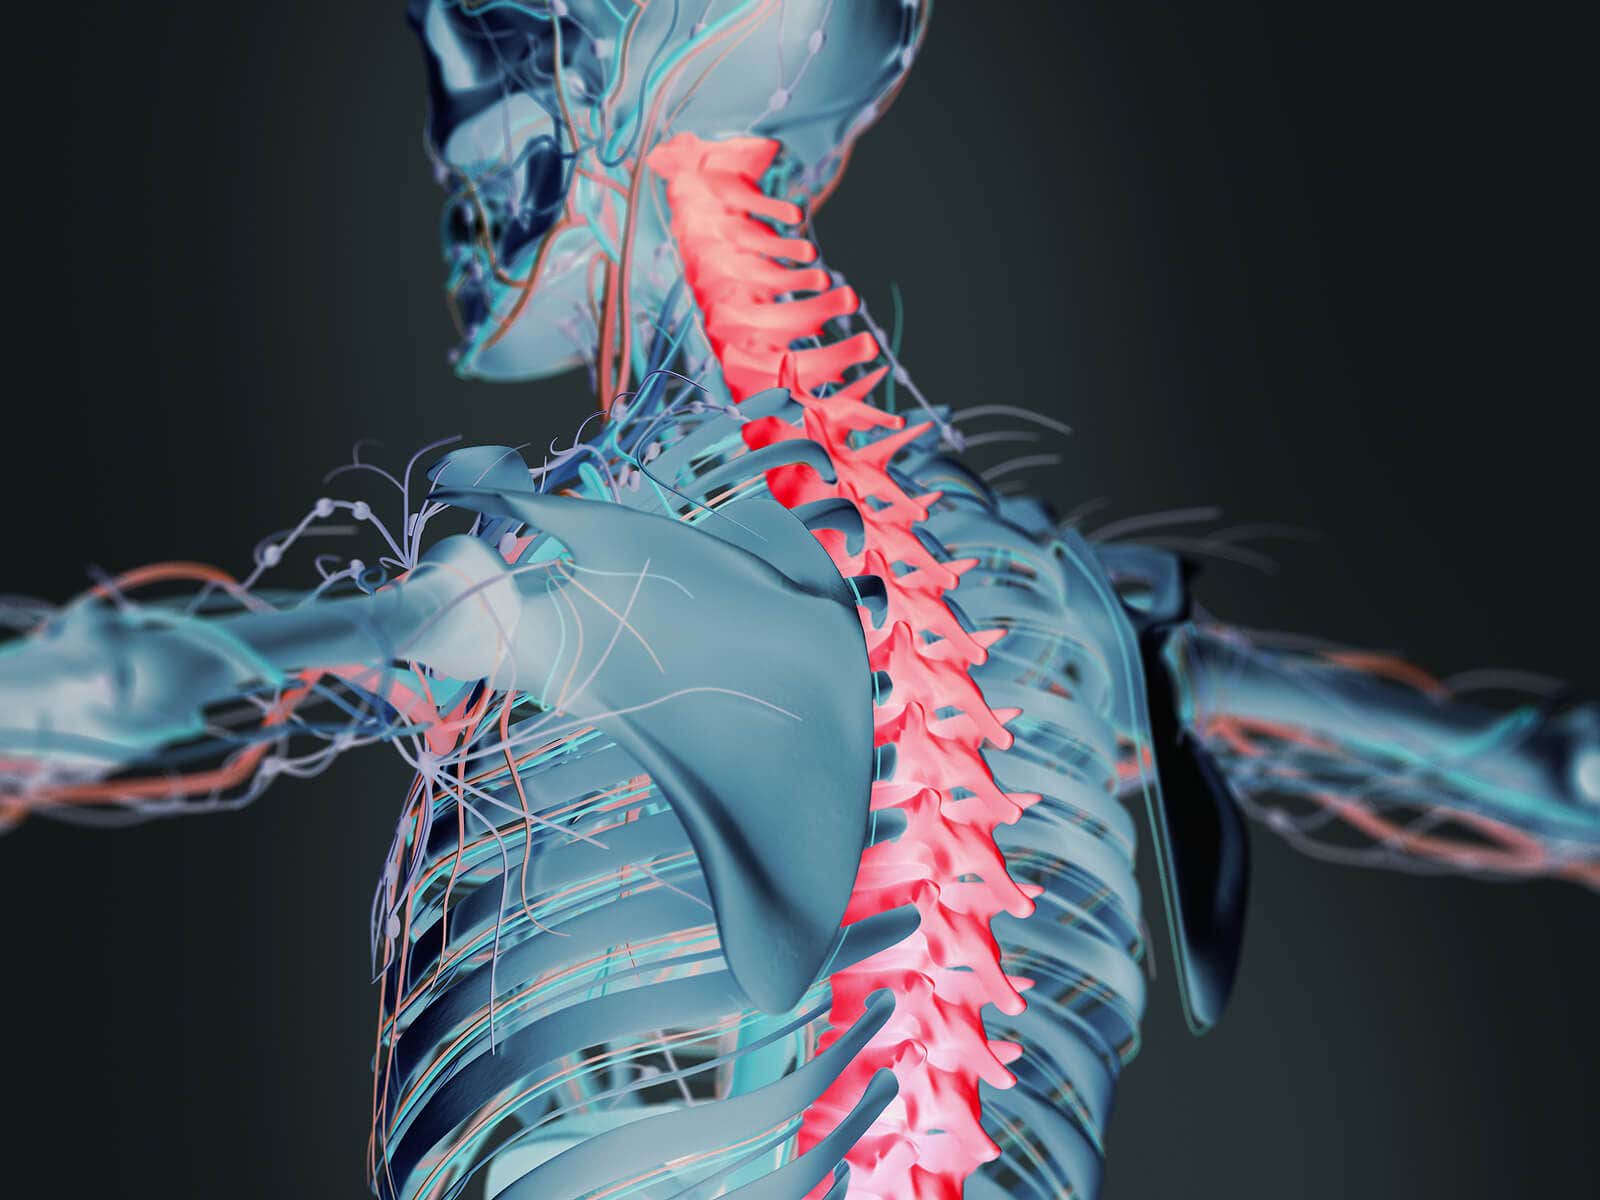 La decorticación se encuentra ligada a daños en la médula espinal.